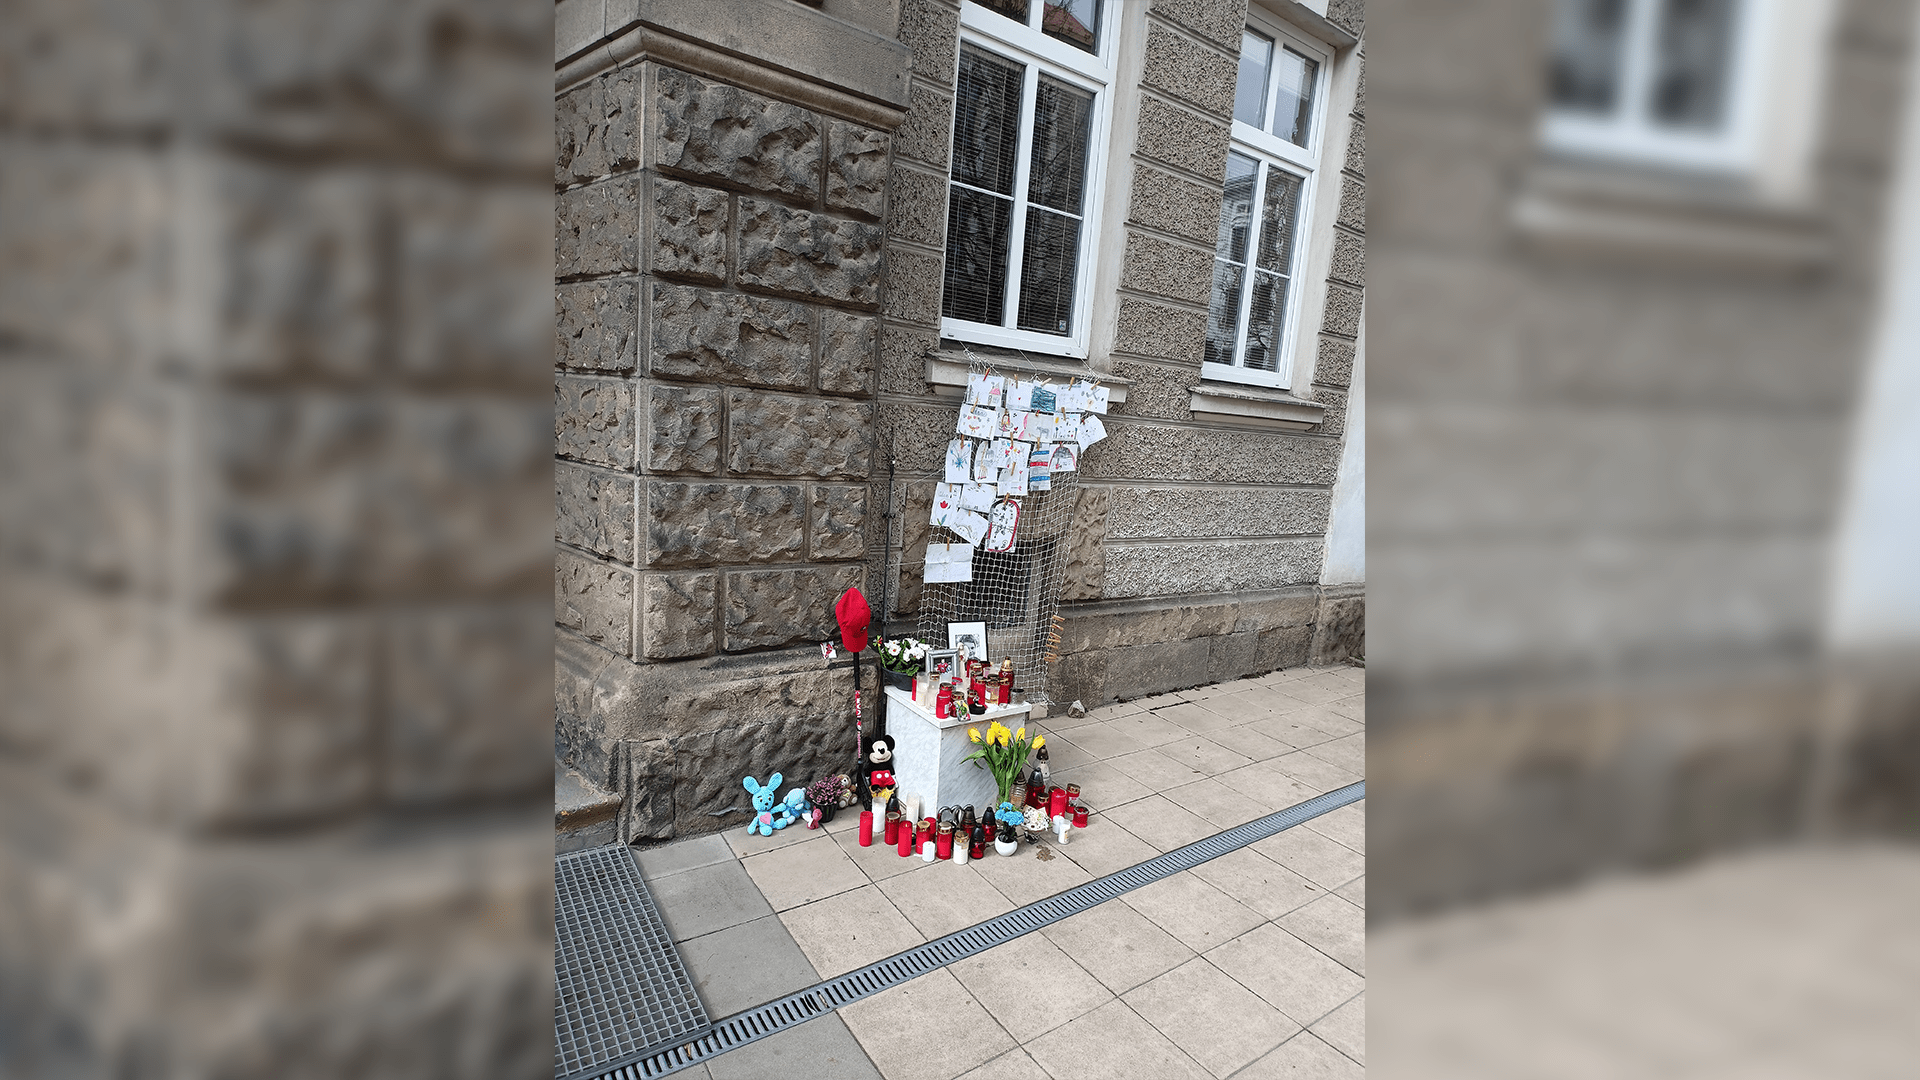 Základní školu v Olomouci zalil smutek, uctila památku 9letého hokejisty.